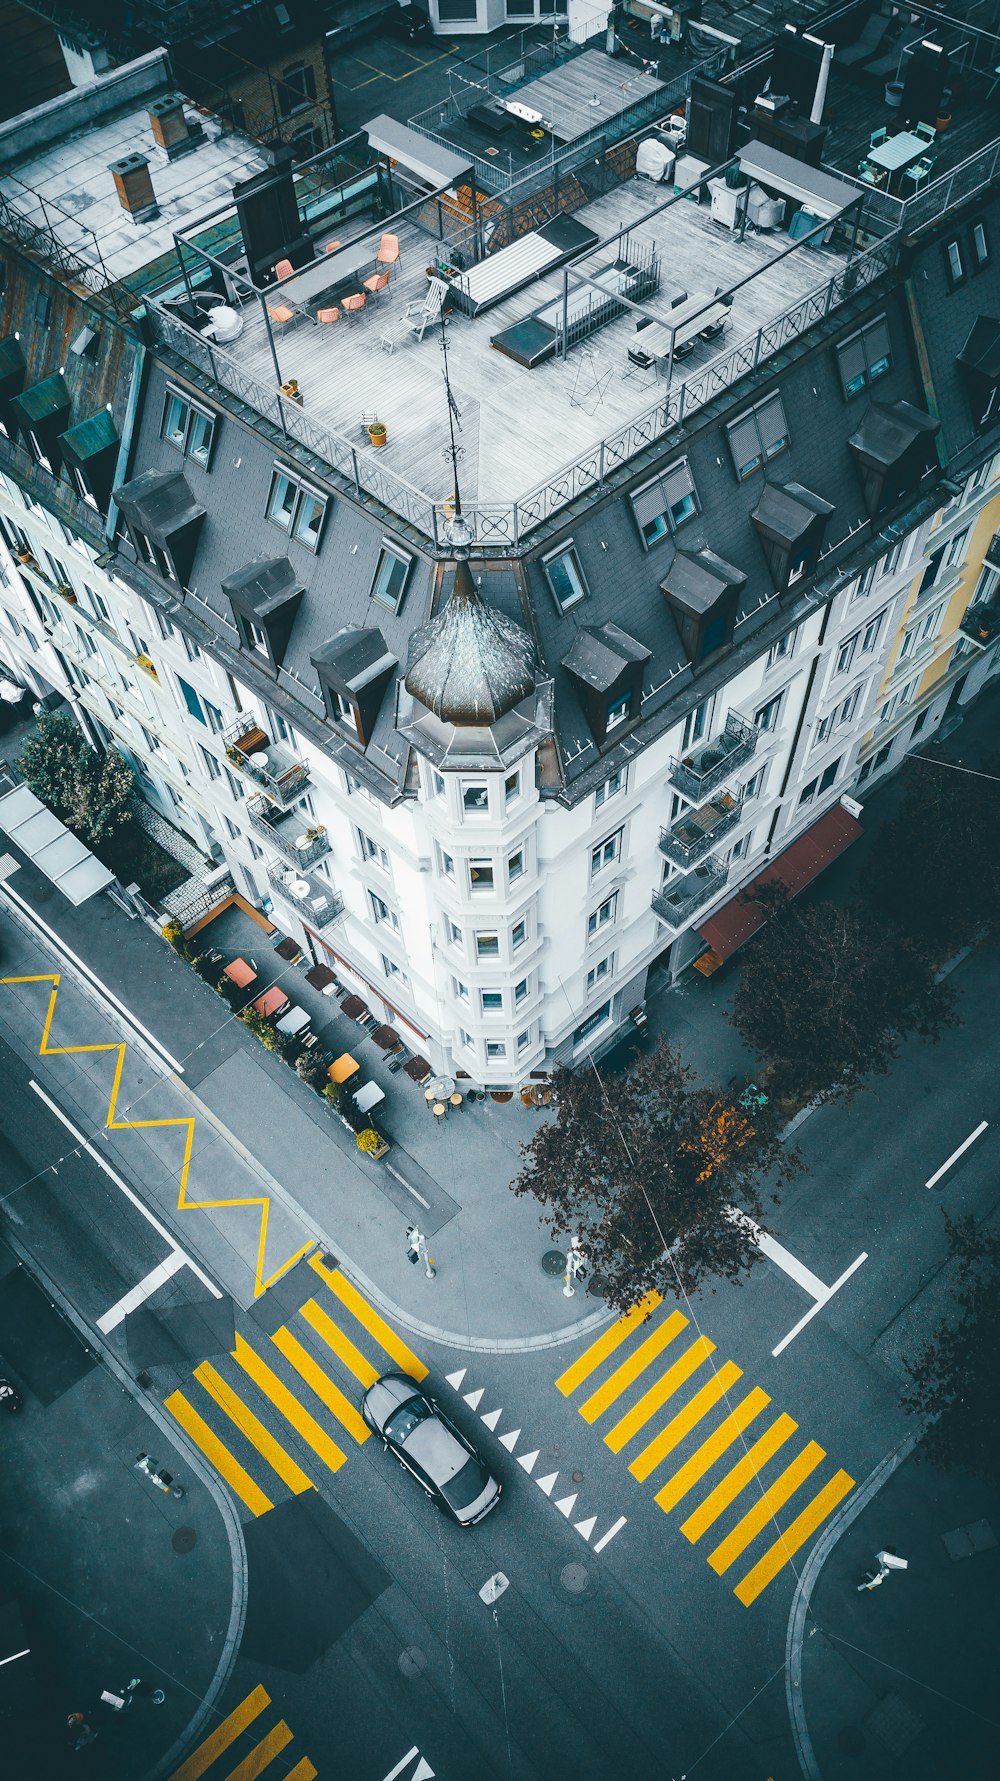 Fotografía aérea de un edificio de varios pisos de hormigón blanco y gris durante el día